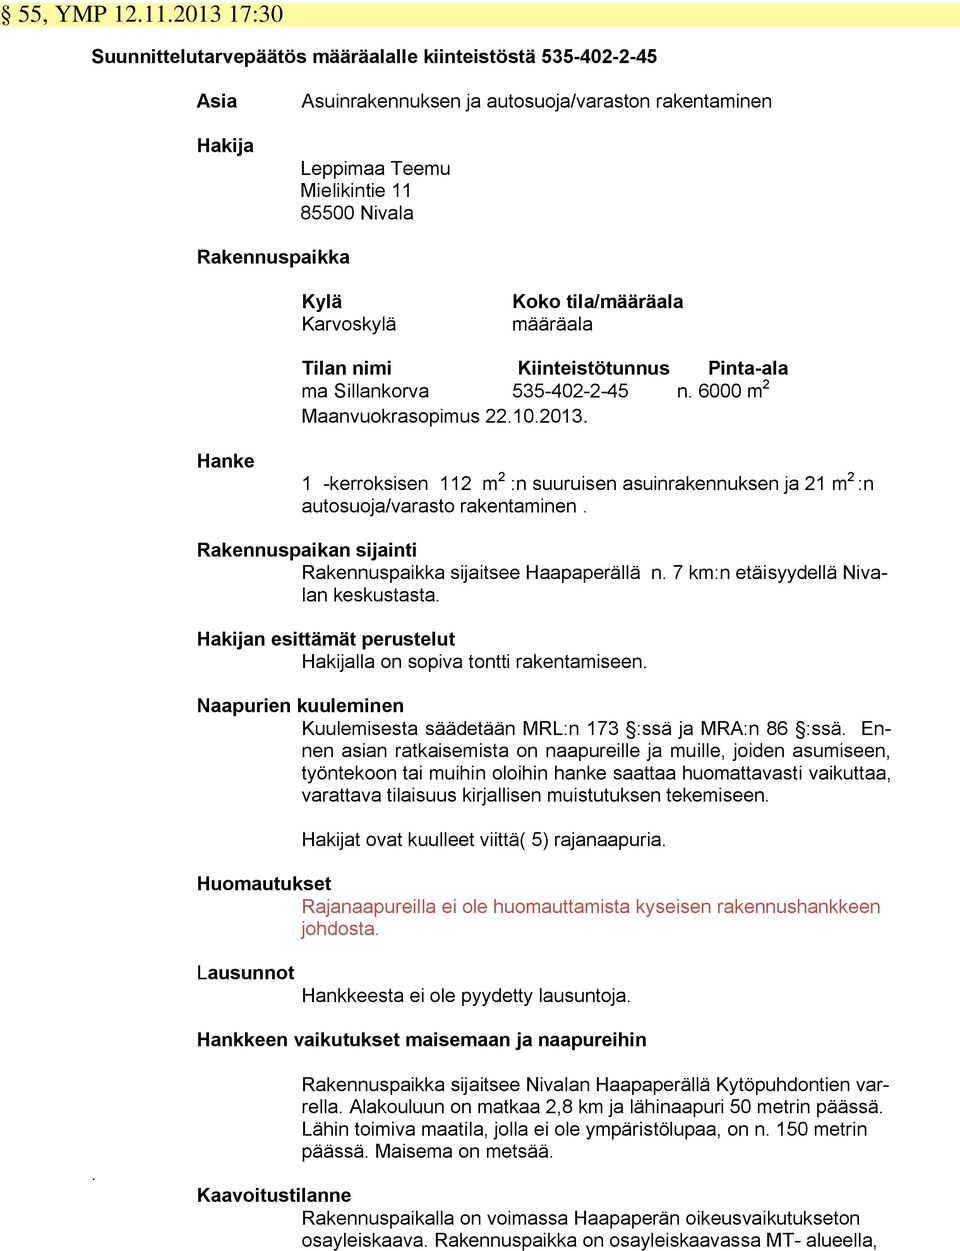 Karvoskylä Koko tila/määräala määräala Tilan nimi Kiinteistötunnus Pinta-ala ma Sillankorva 535-402-2-45 n. 6000 m 2 Maanvuokrasopimus 22.10.2013.